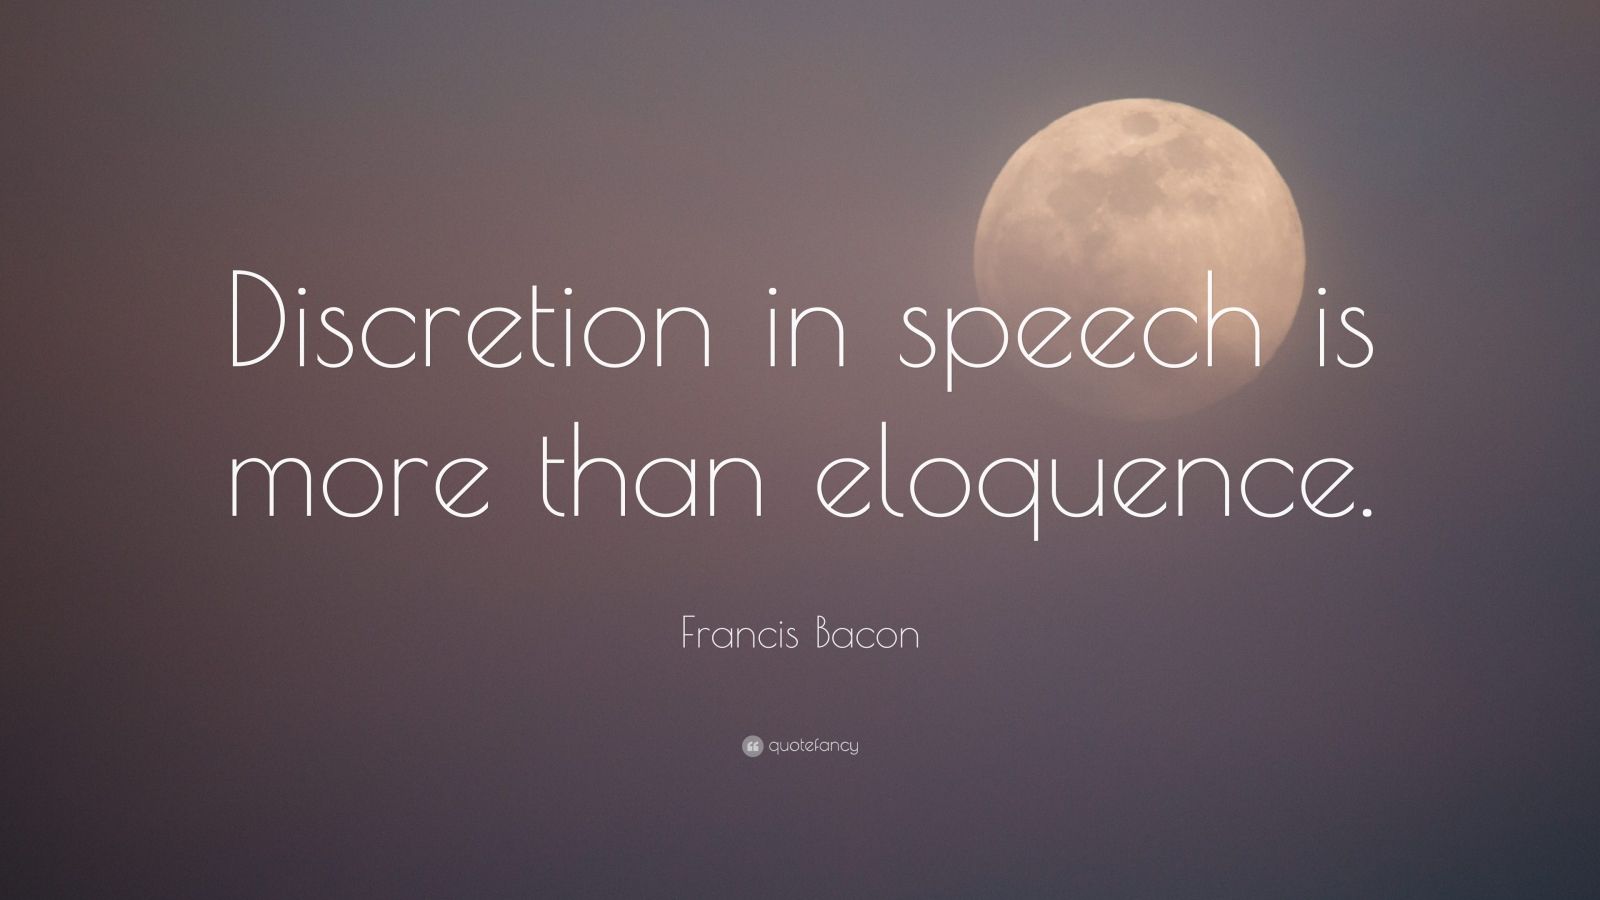 definition of eloquent speech